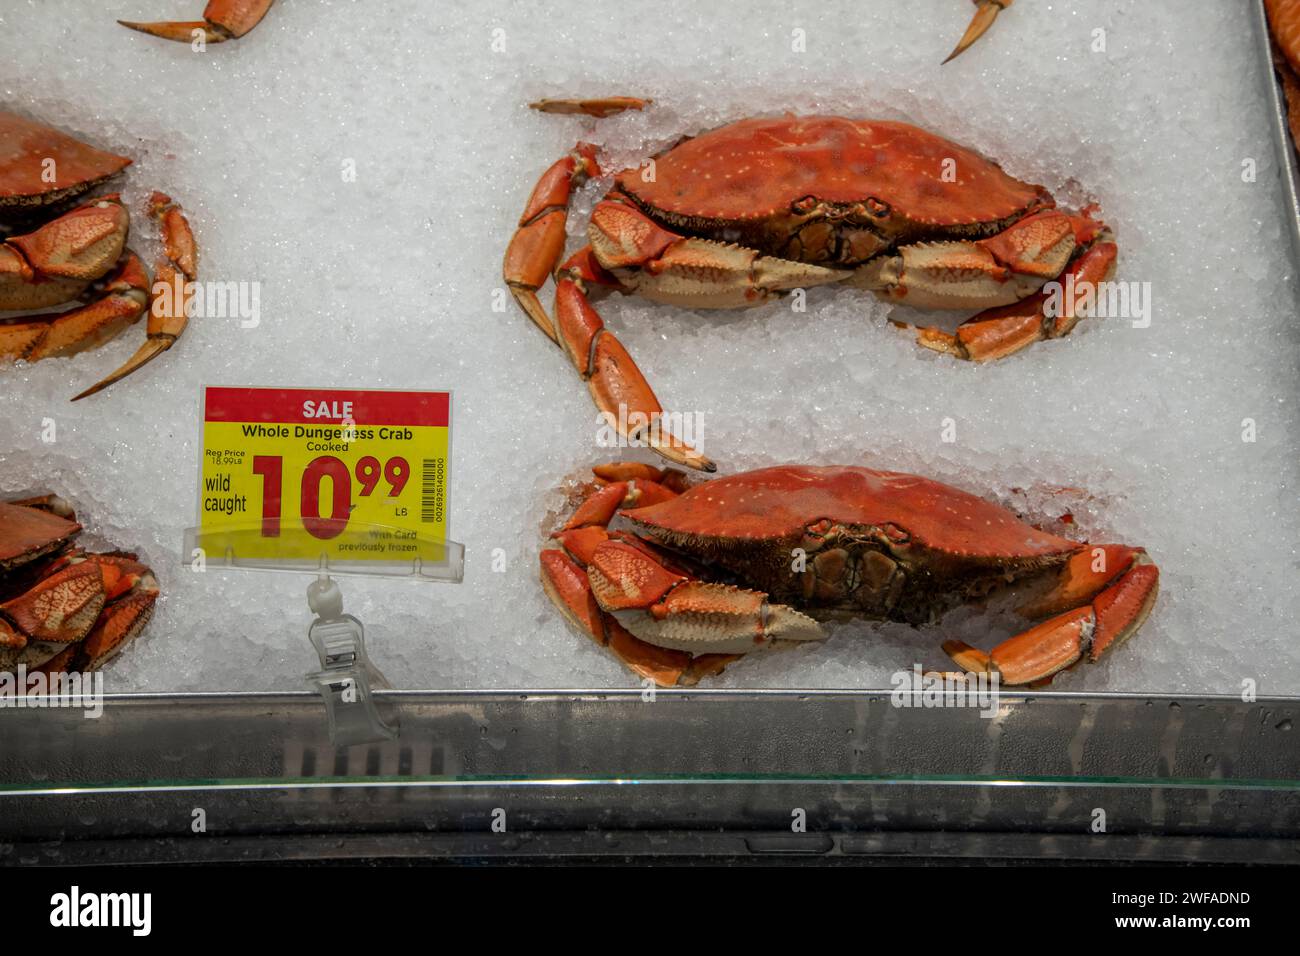 Palmer, Alaska. Wild fing die ganze dungeness Krabbe, die in einem Fred Meyer Supermarkt verkauft wird, ein U-Boot von Kroger. Die Einzelhandelskette verkauft Lebensmittel, Bekleidung Stockfoto